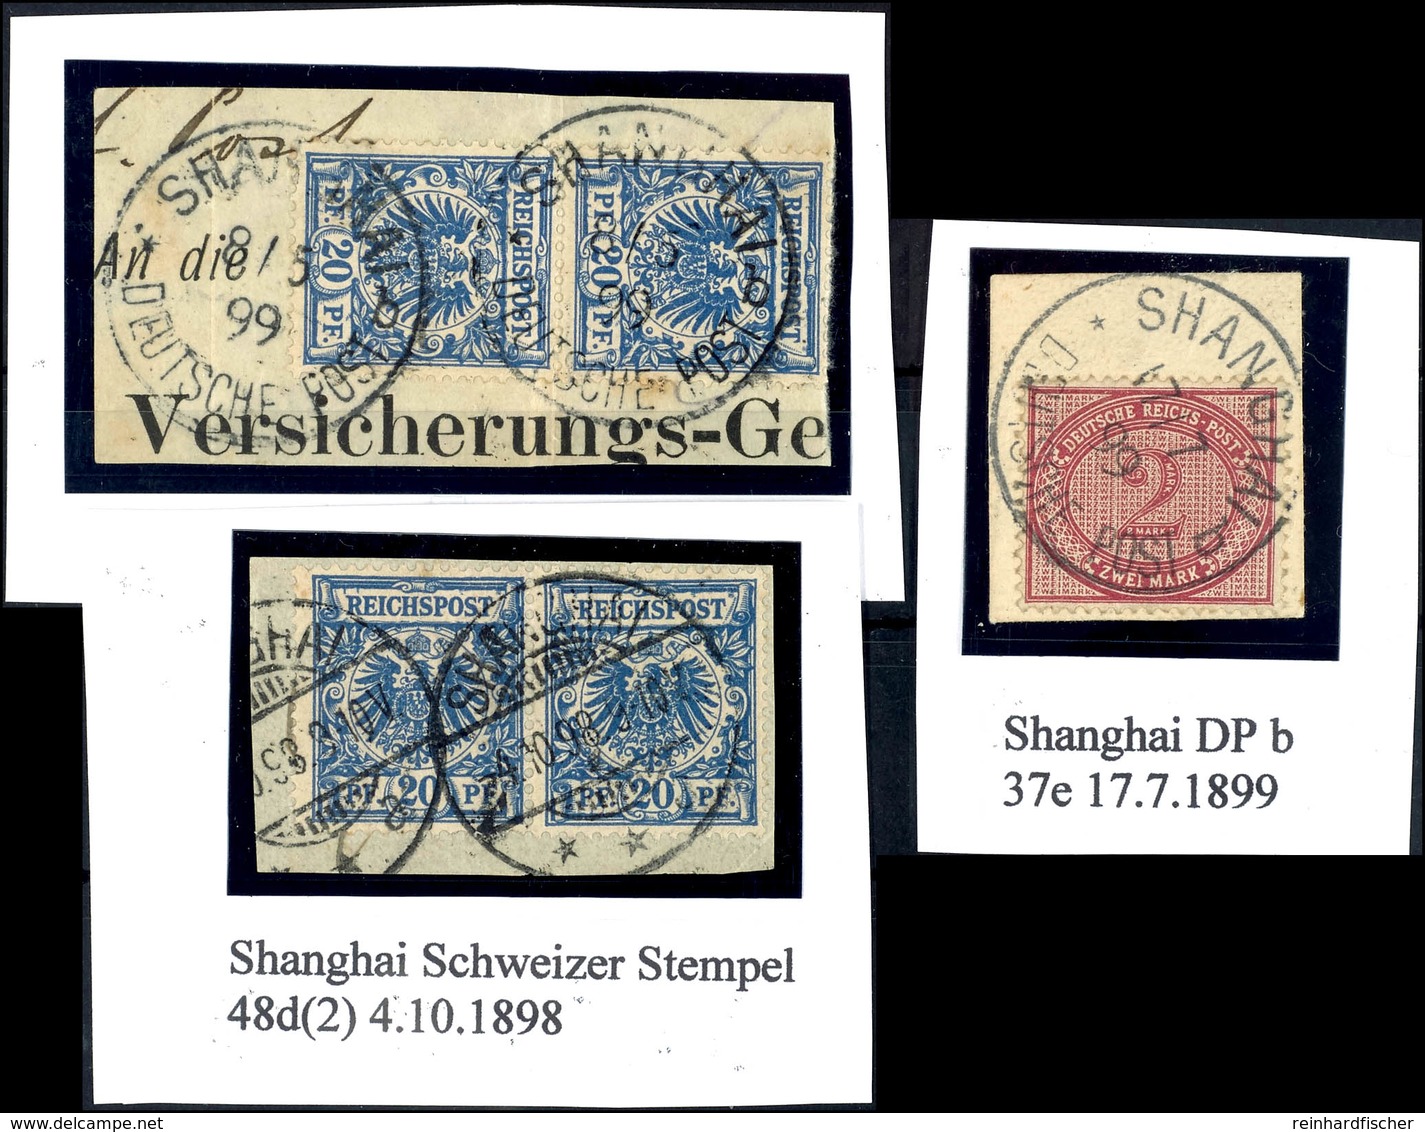 2 Mark Und 2 Werte 20 Pf. Auf Briefstück Mit Stempel SHANGHAI B, Sowie 2 Werte V 48d Mit "Schweizer Stempel" SHANGHAI A  - Deutsche Post In China